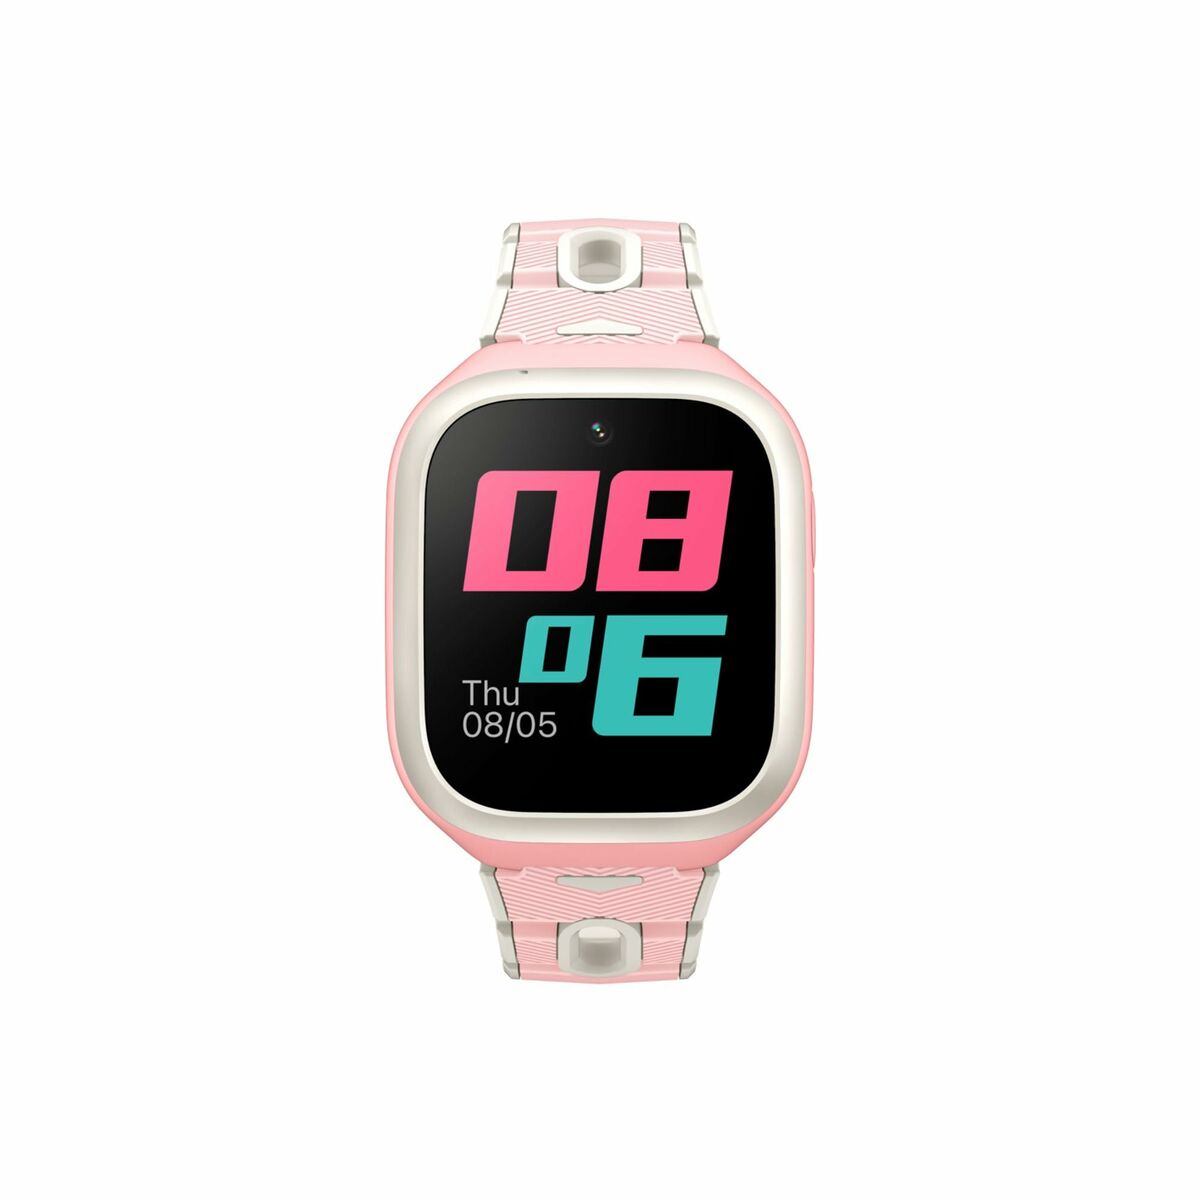 Kaufe Smartwatch Mibro P5 Rosa bei AWK Flagship um € 101.00